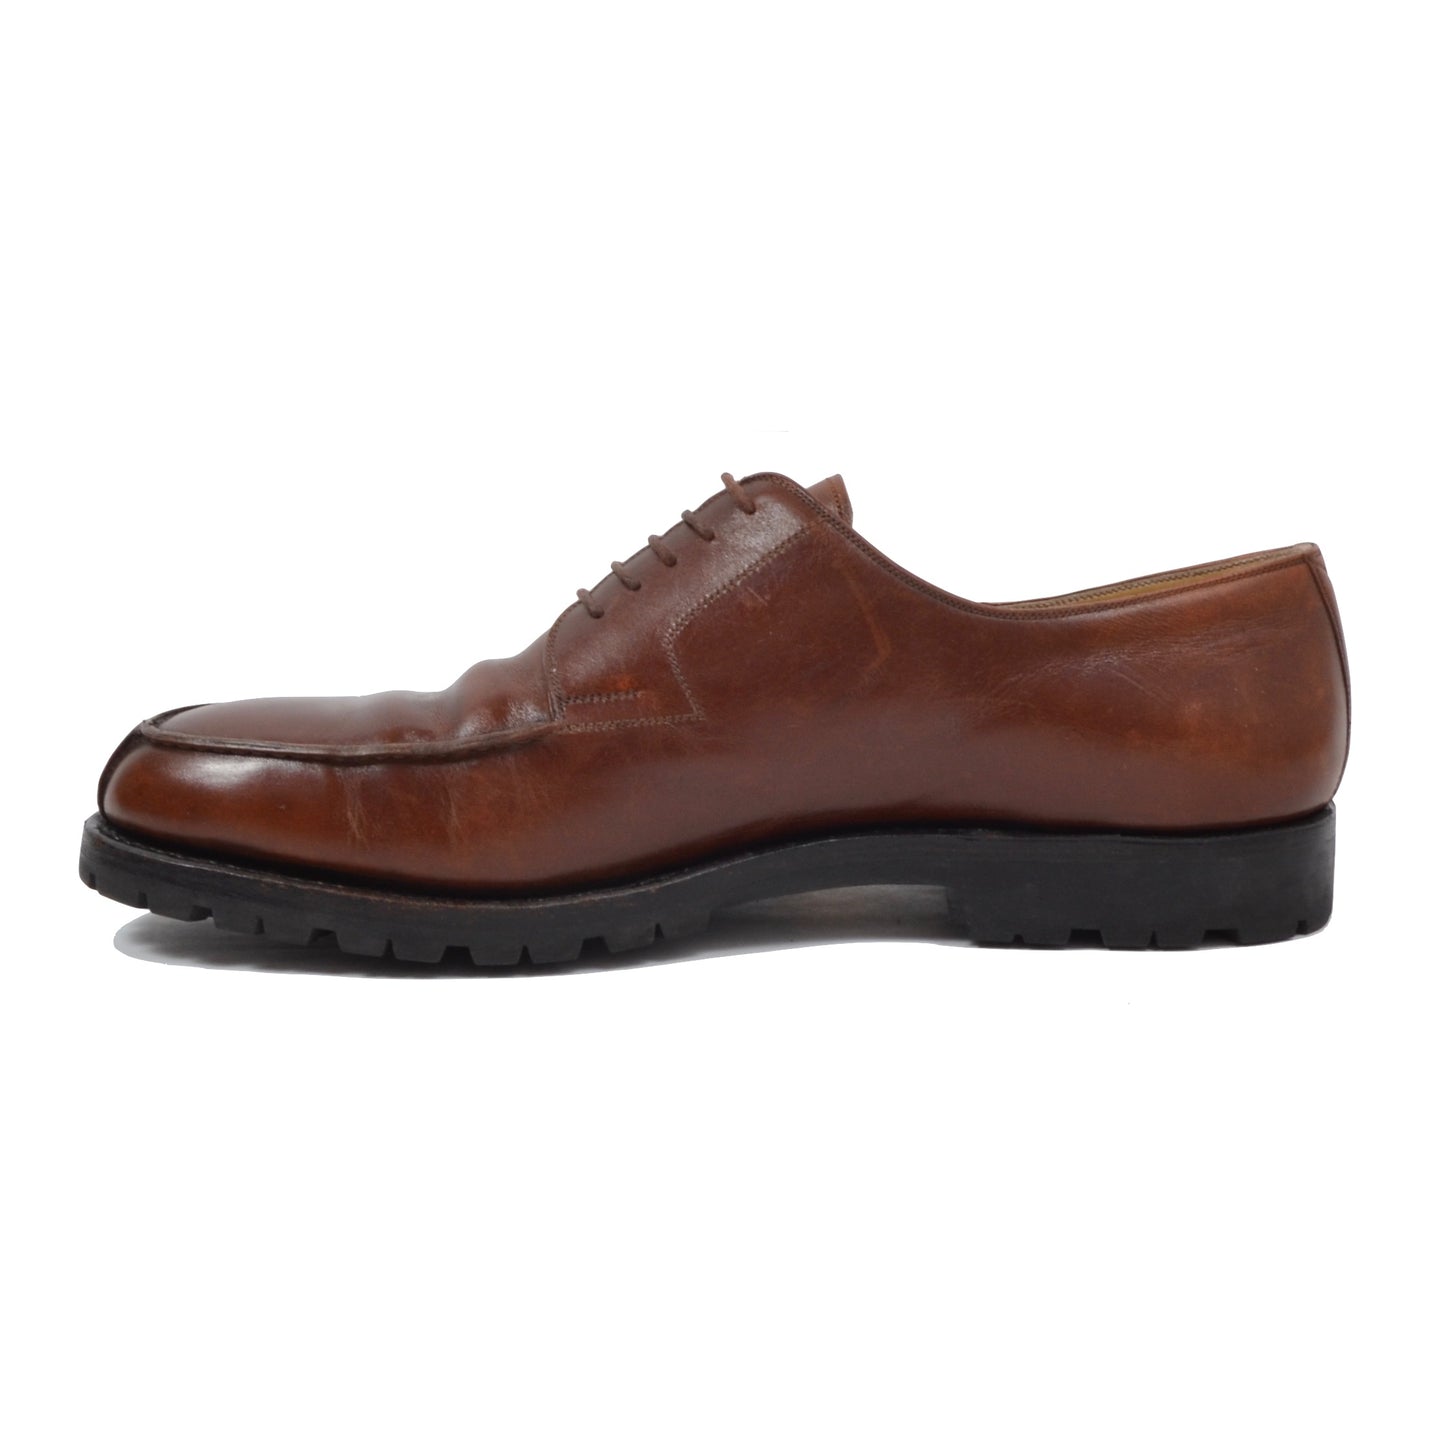 László Vass Split Toe Norweger Shoes Size 45.5 - Cognac Brown